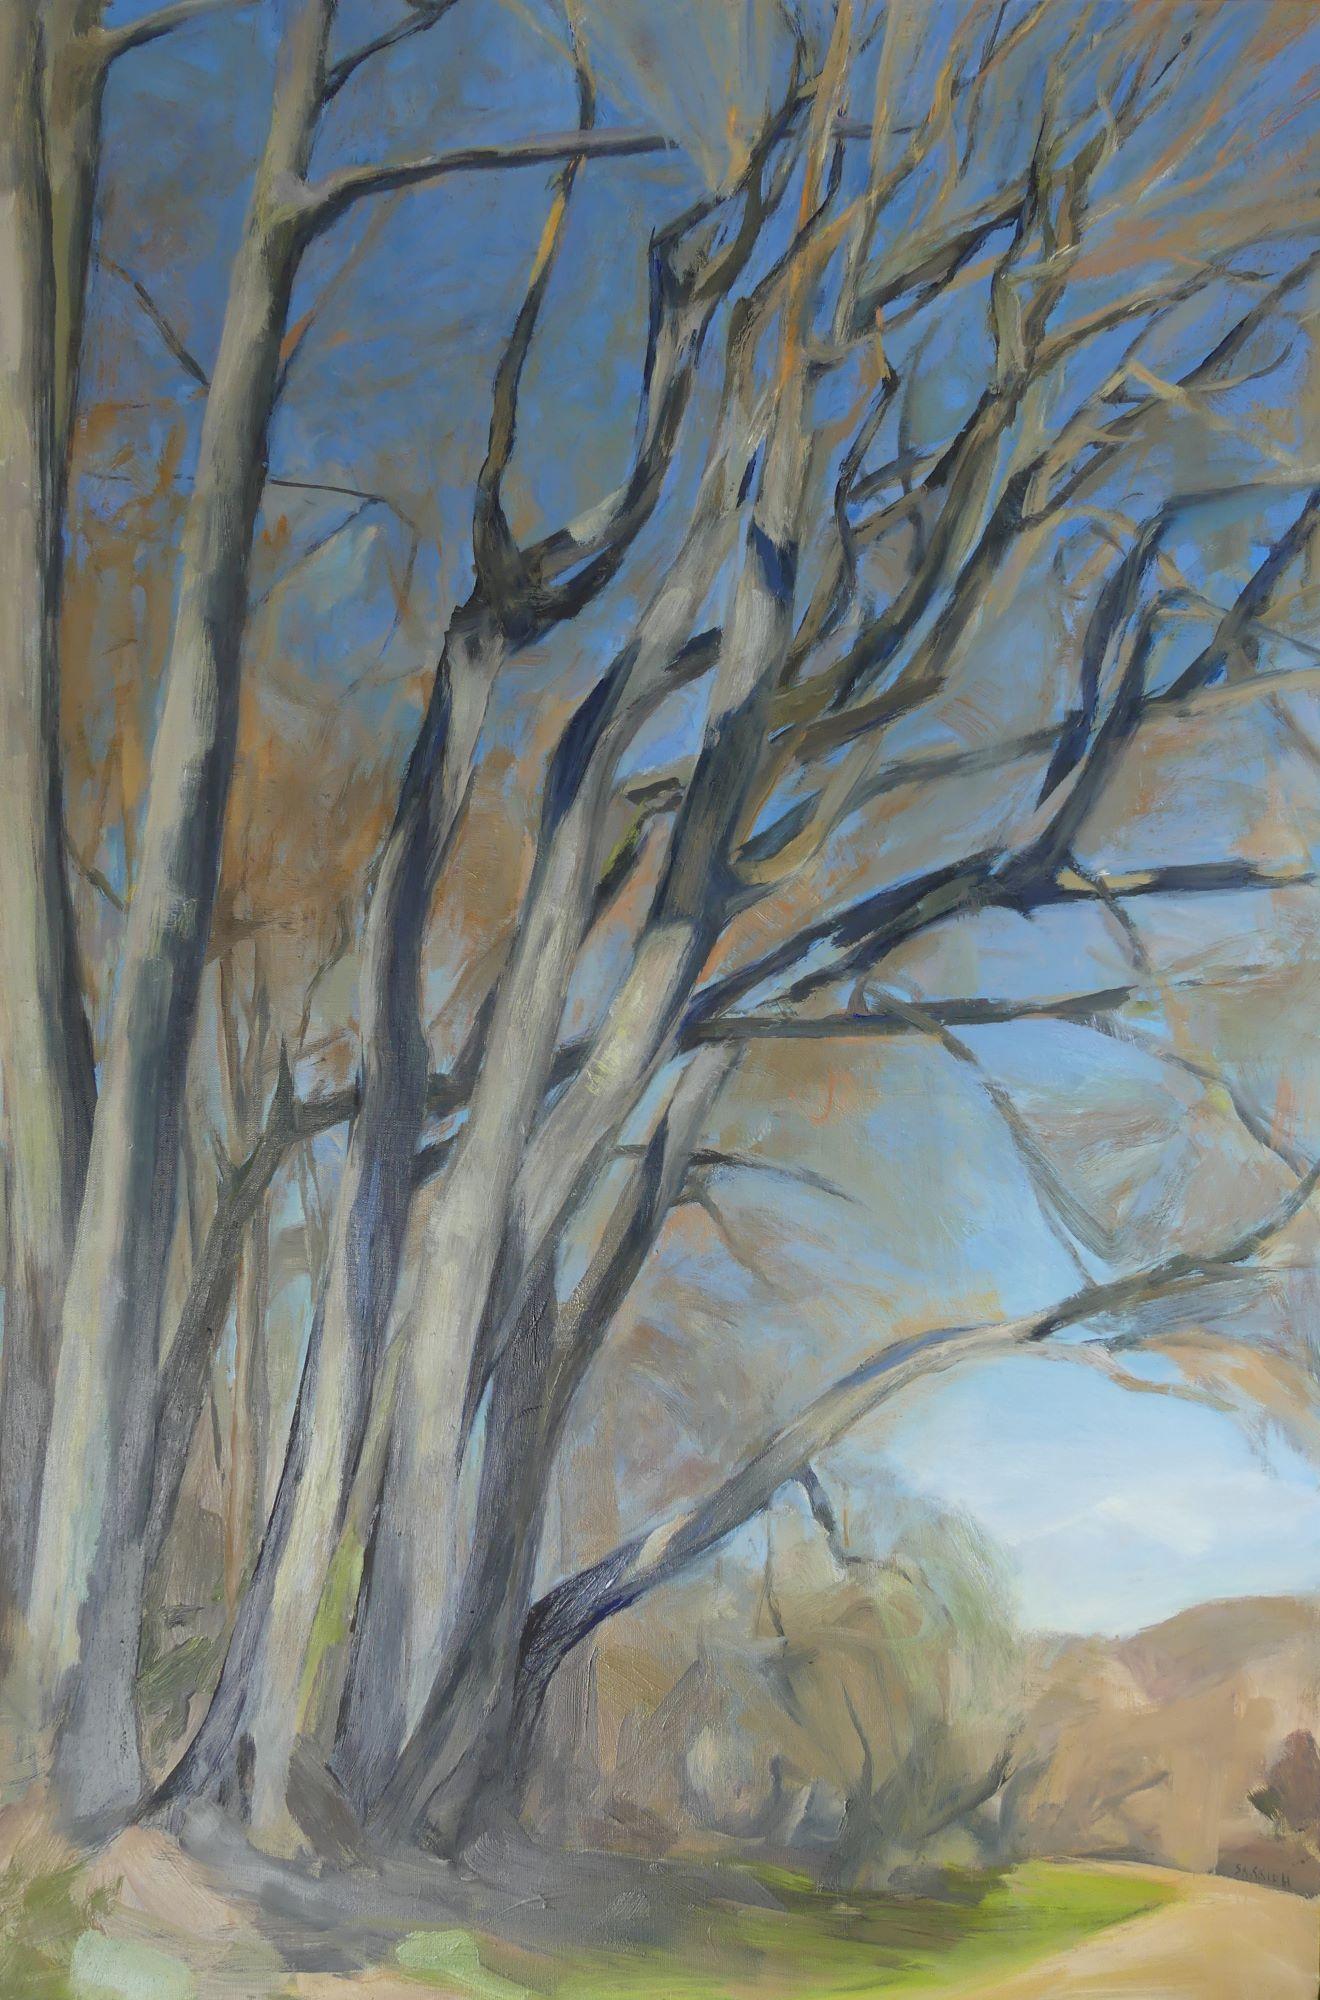 Bouquet d'arbres est une peinture unique à l'huile sur toile de l'artiste contemporaine Valérie de Sarrieu, dont les dimensions sont de 120 × 80 cm (47,2 × 31,5 in).
L'œuvre est signée, vendue non encadrée et accompagnée d'un certificat